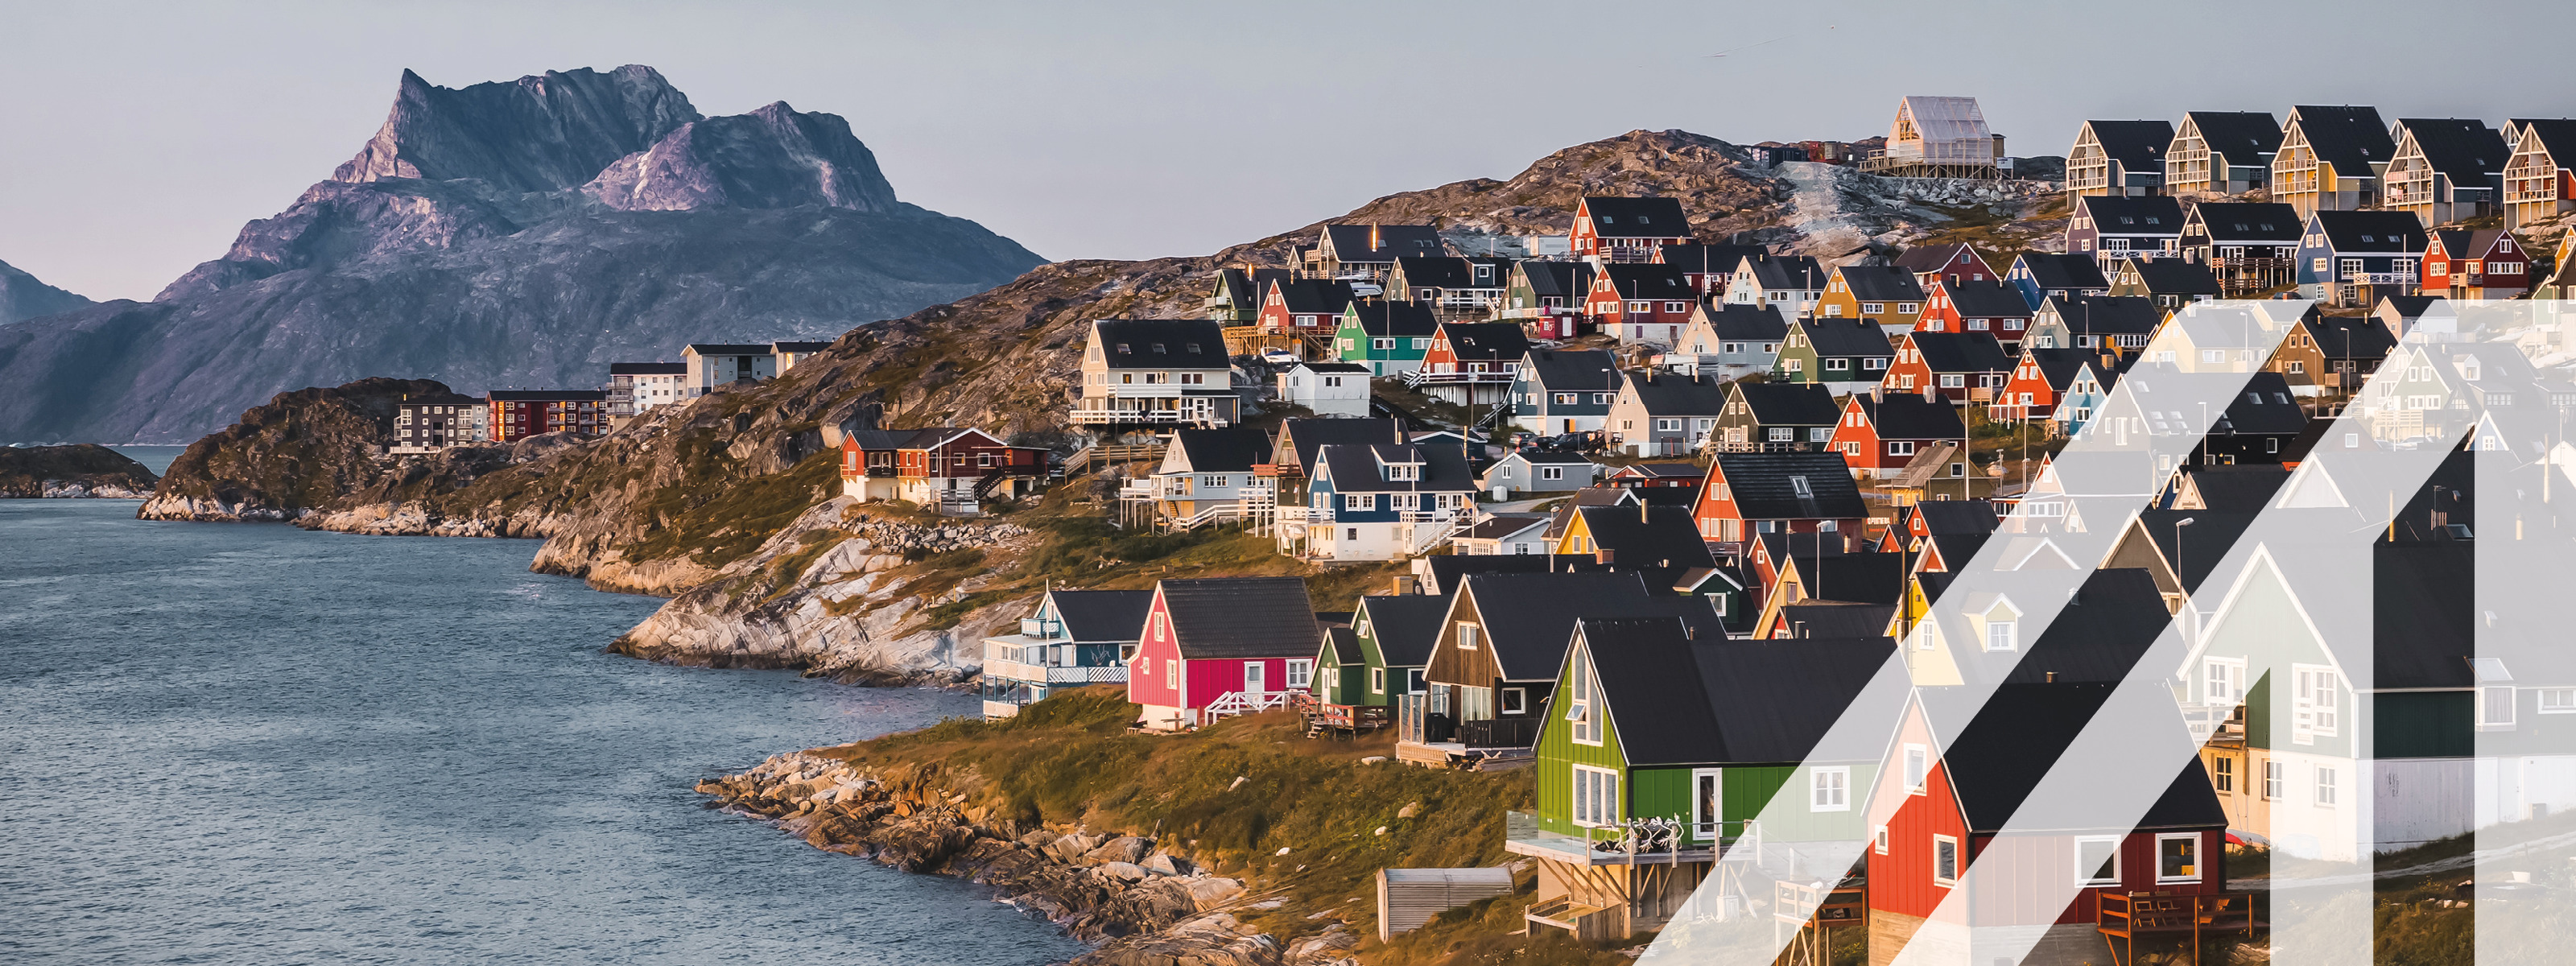 Stadtansicht von Nuuk: Hauptstadt von Grönland mit vielen bunten Häusern in myggedalen. Berg Sermitsiaq im Hintergrund.